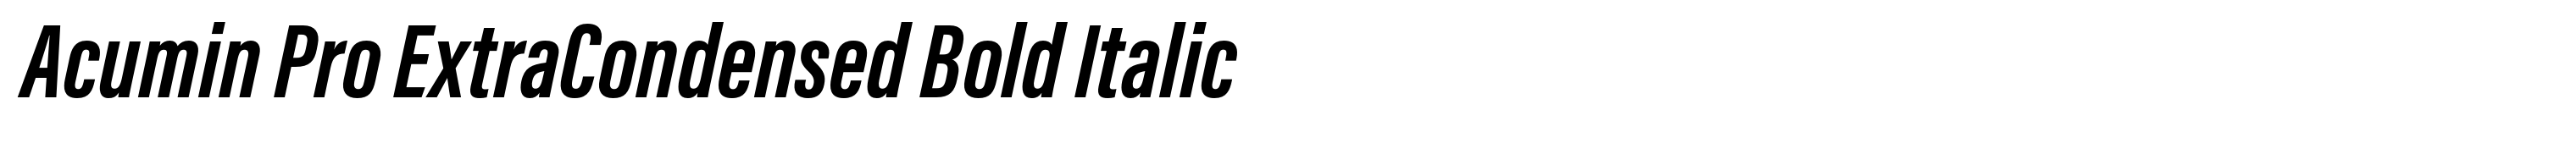 Acumin Pro ExtraCondensed Bold Italic